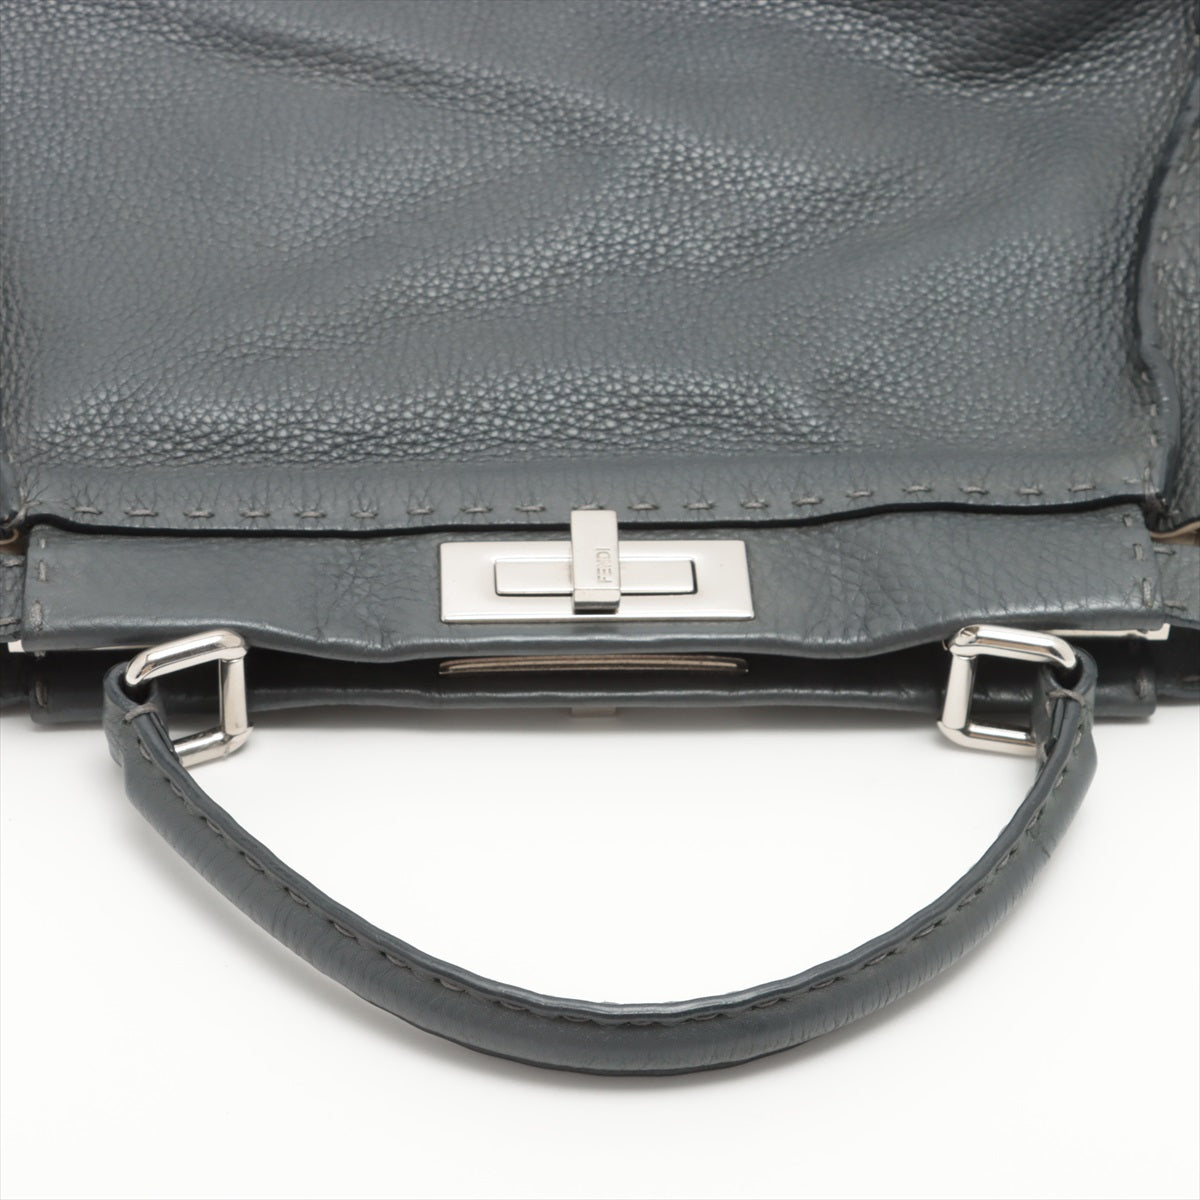 Fendi PEEKABOO REGULAR Selleria Leather 2way handbag Grey 8BN290